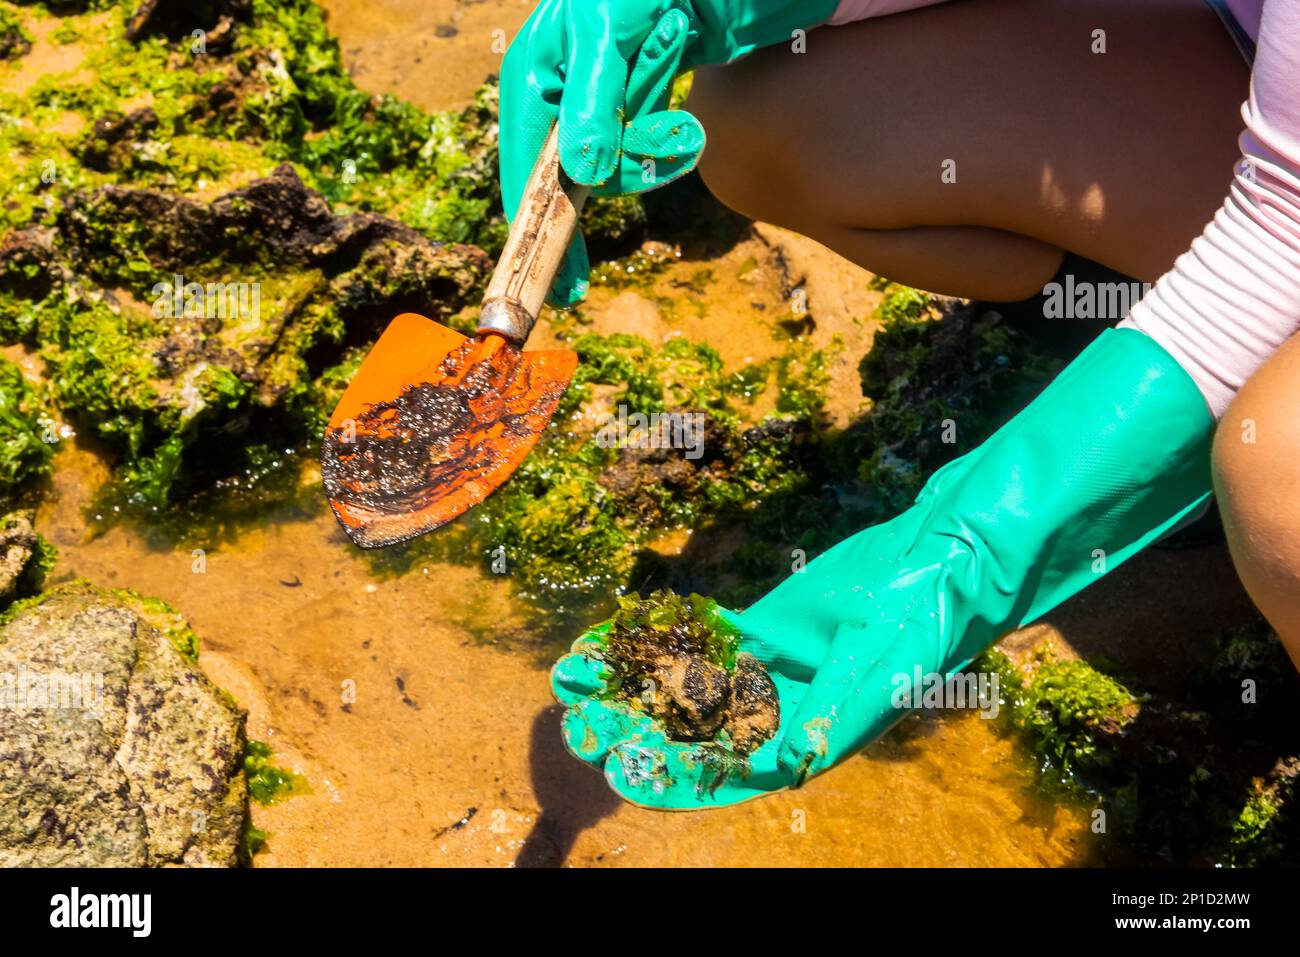 Salvador, Bahia, Brasilien - 27. Oktober 2019: Freiwilliger zeigt, dass Öl vom Strand Rio Vermelho entfernt wurde, nachdem es von einem Schiff vor der brasilianischen Küste verschüttet wurde. Salv Stockfoto